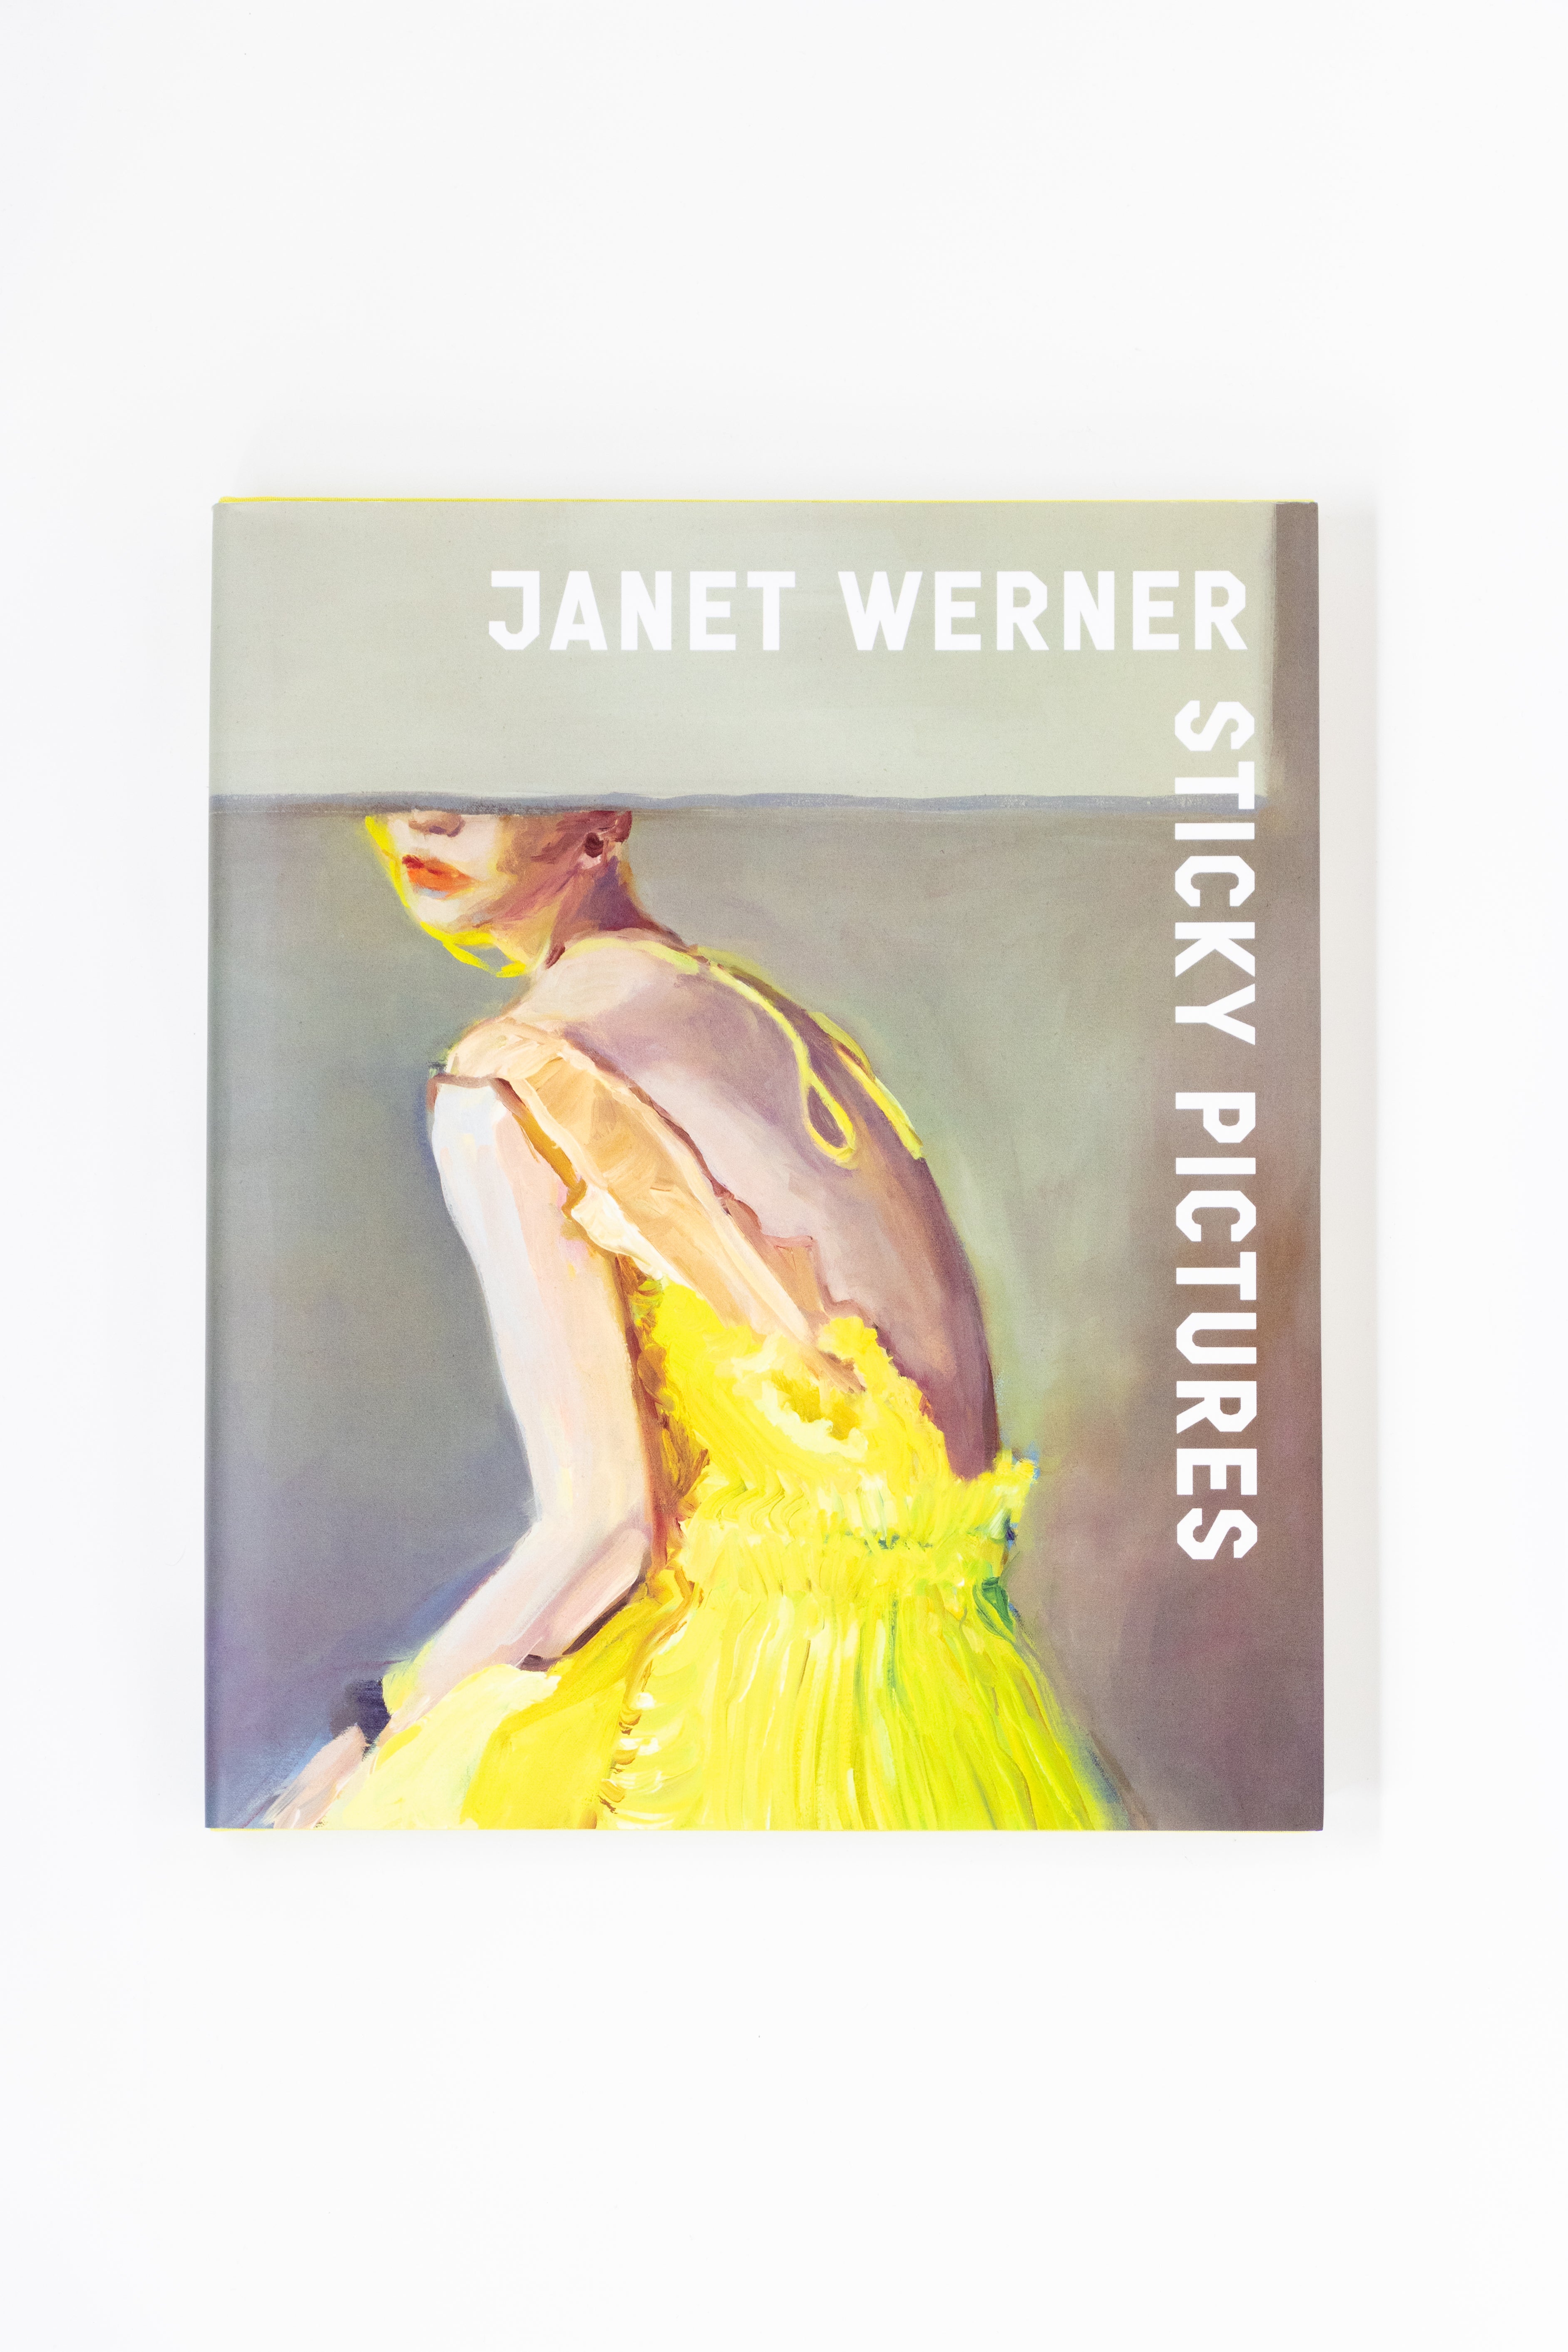 JanetWerner-1.jpg